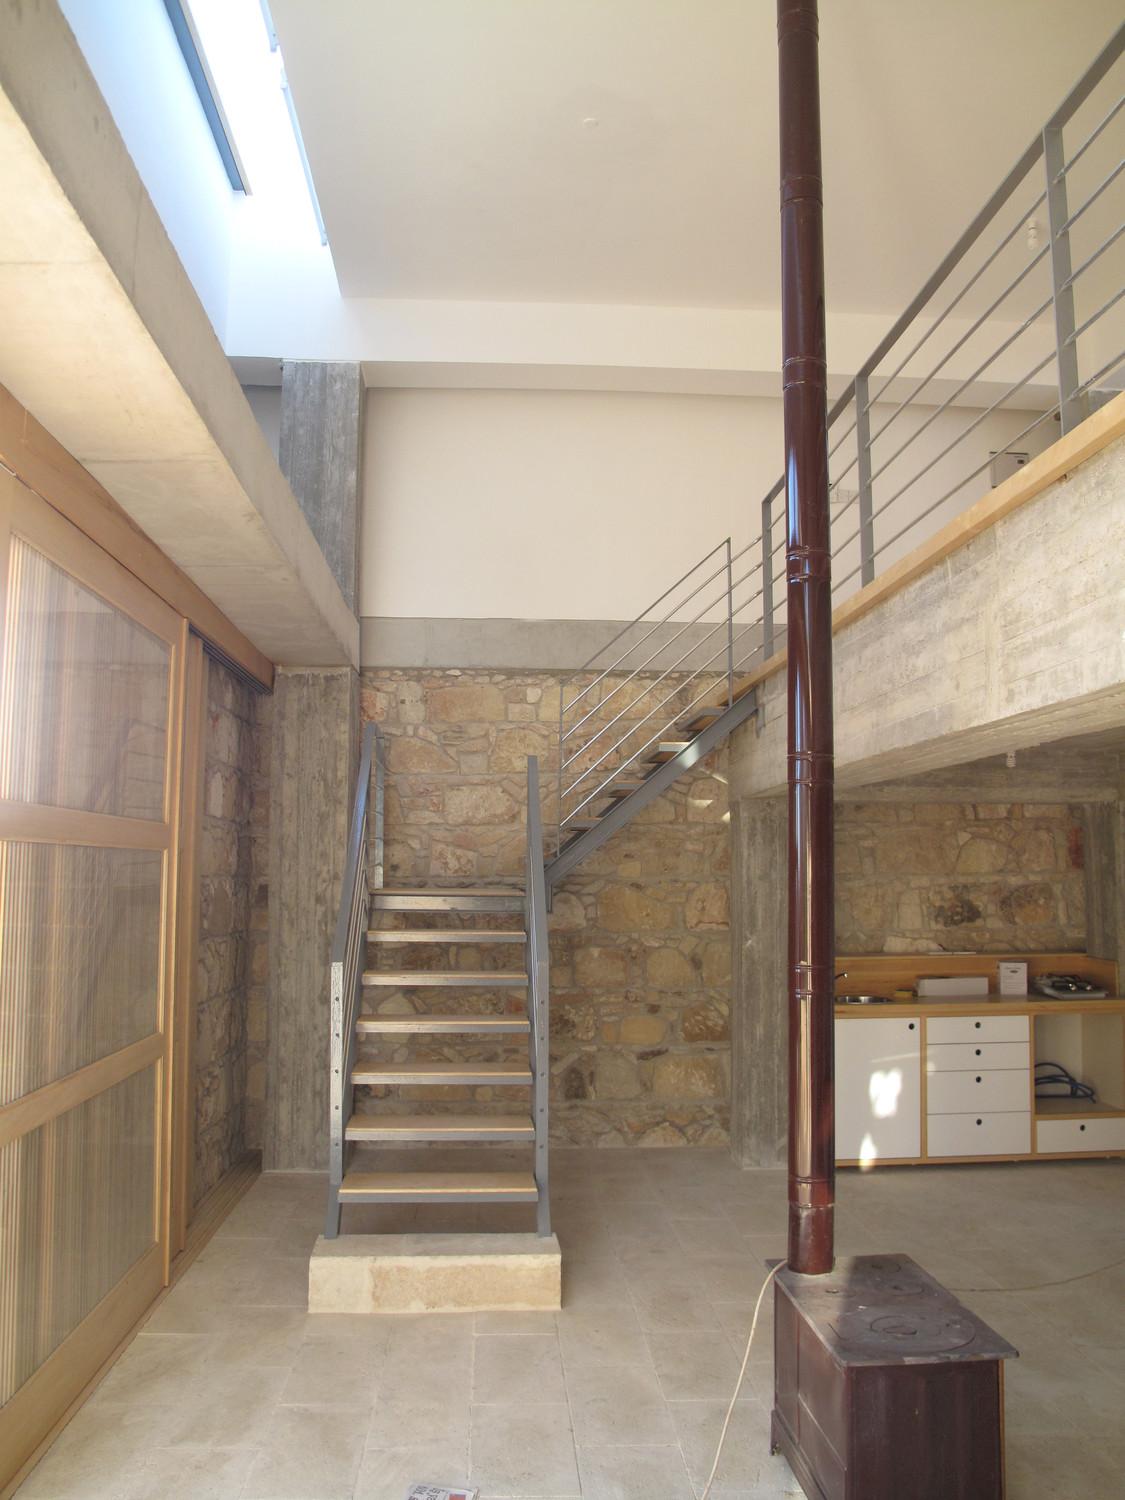 Interior, stairway